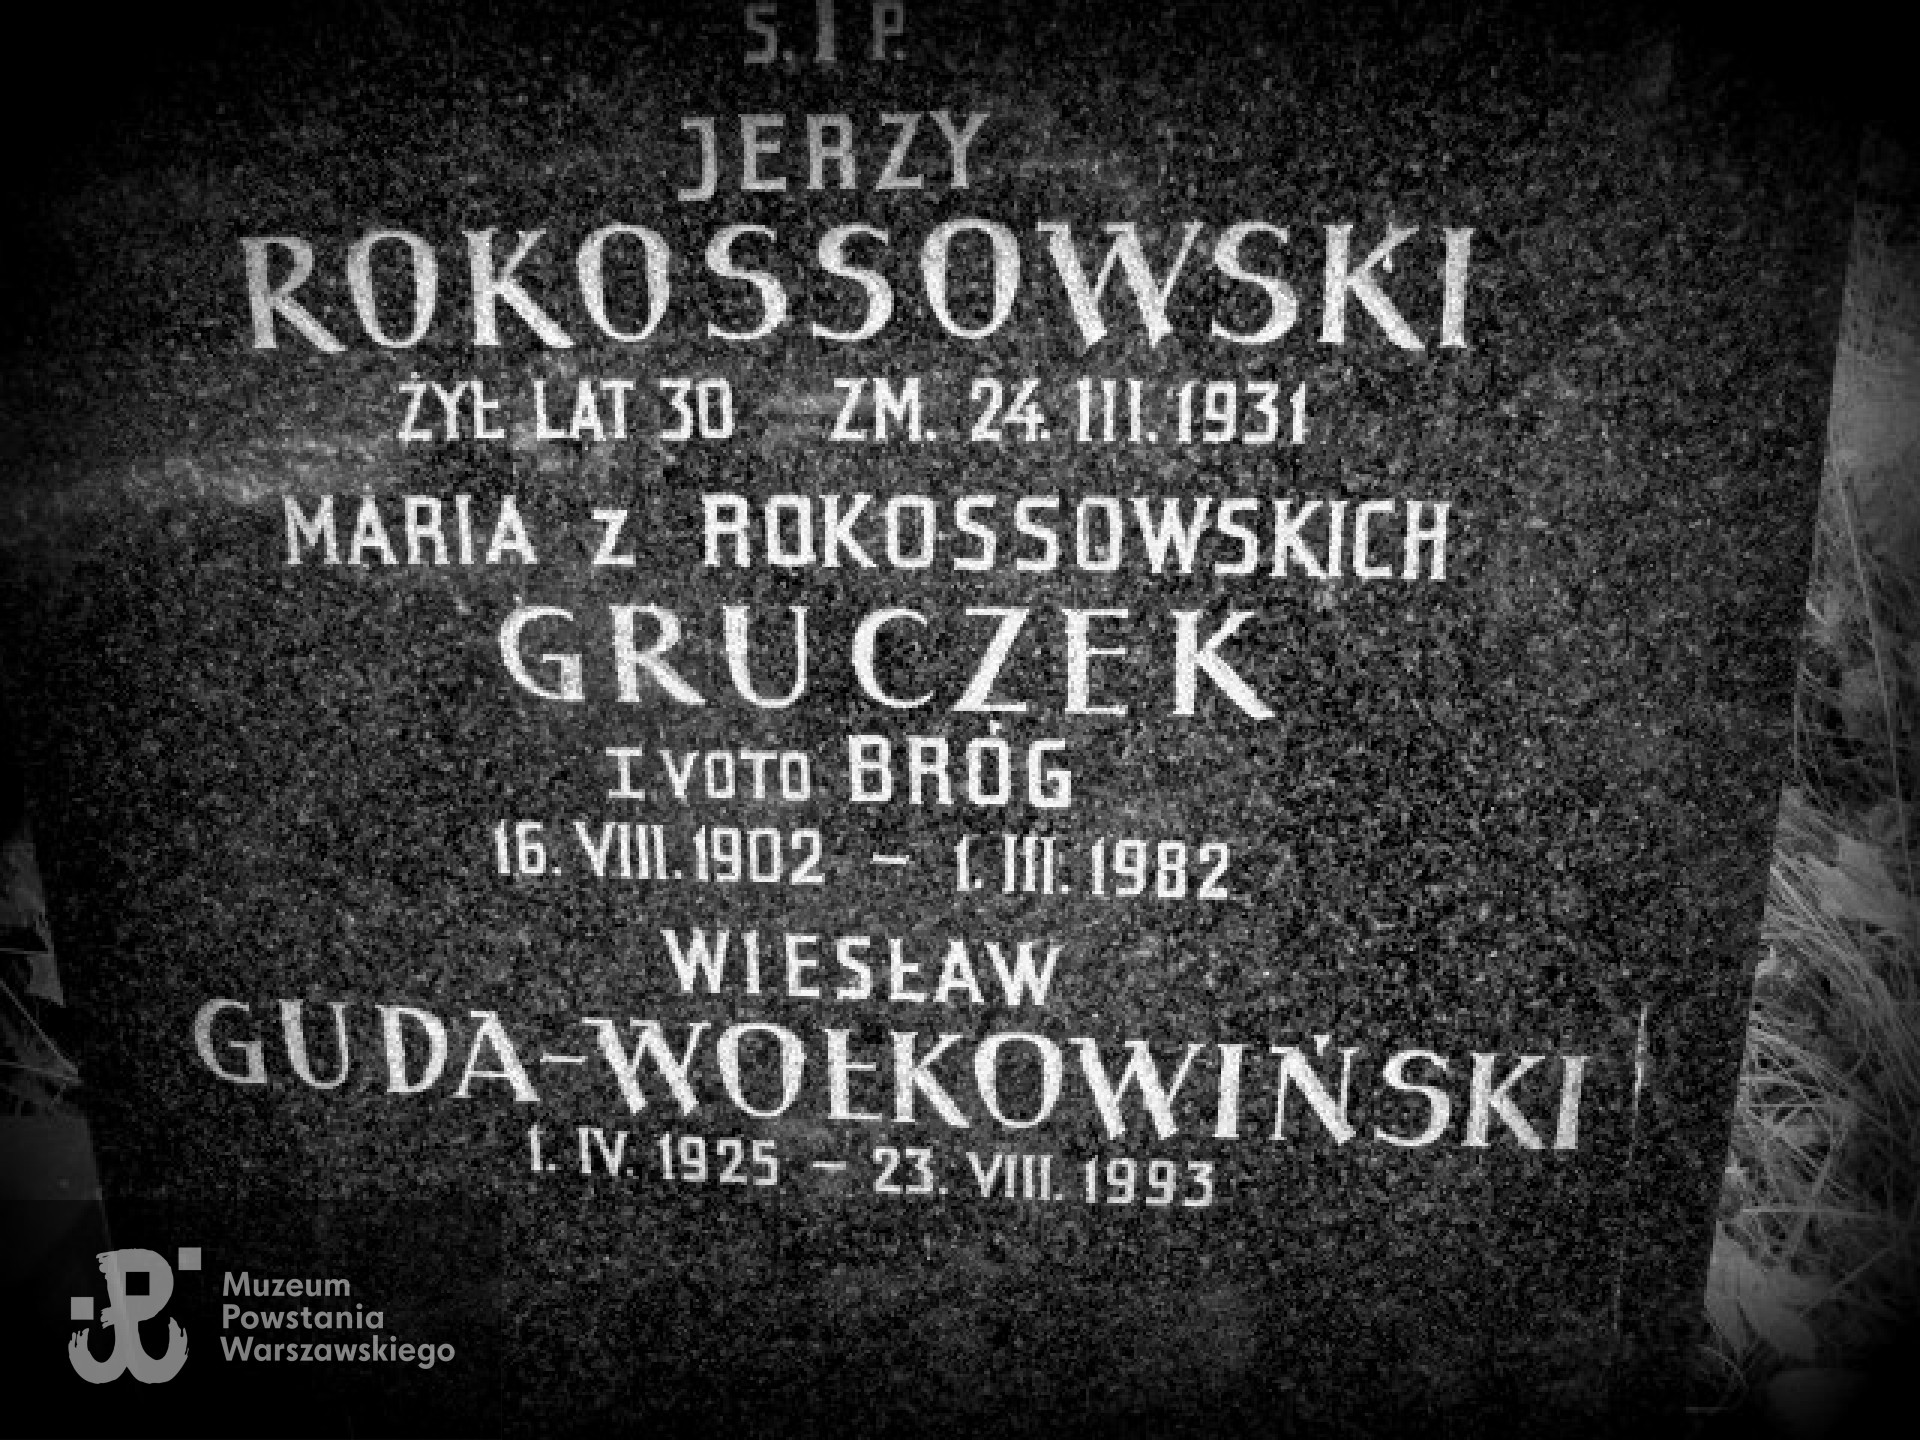 Cmentarz Ewangelicko-Augsburski w Warszawie przy ul. Młynarskiej, kwatera Al 23, rząd  1, grób 24.